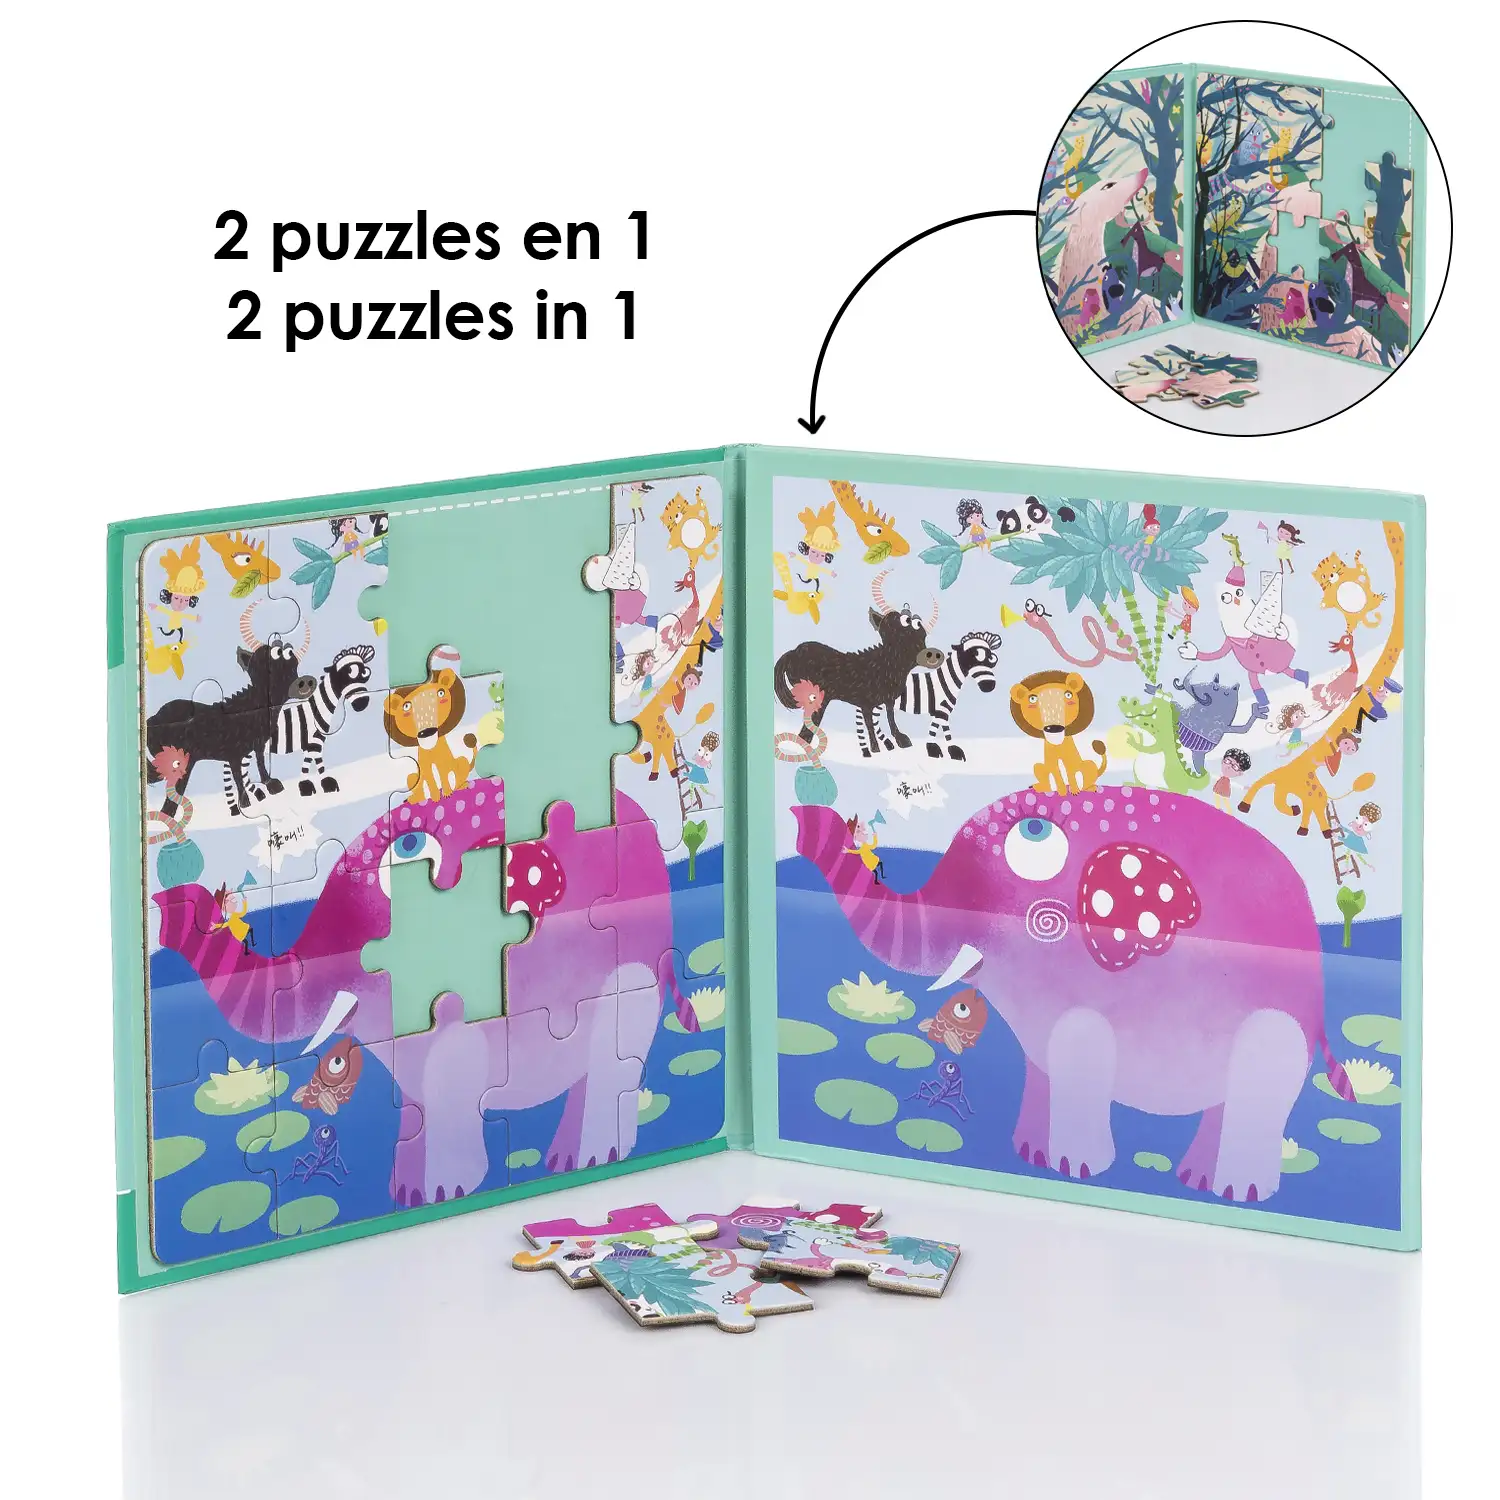 Puzle diseño Mundo Animal de 40 piezas magnético. Formato tipo libro, 2 puzzles de 20 piezas en 1.